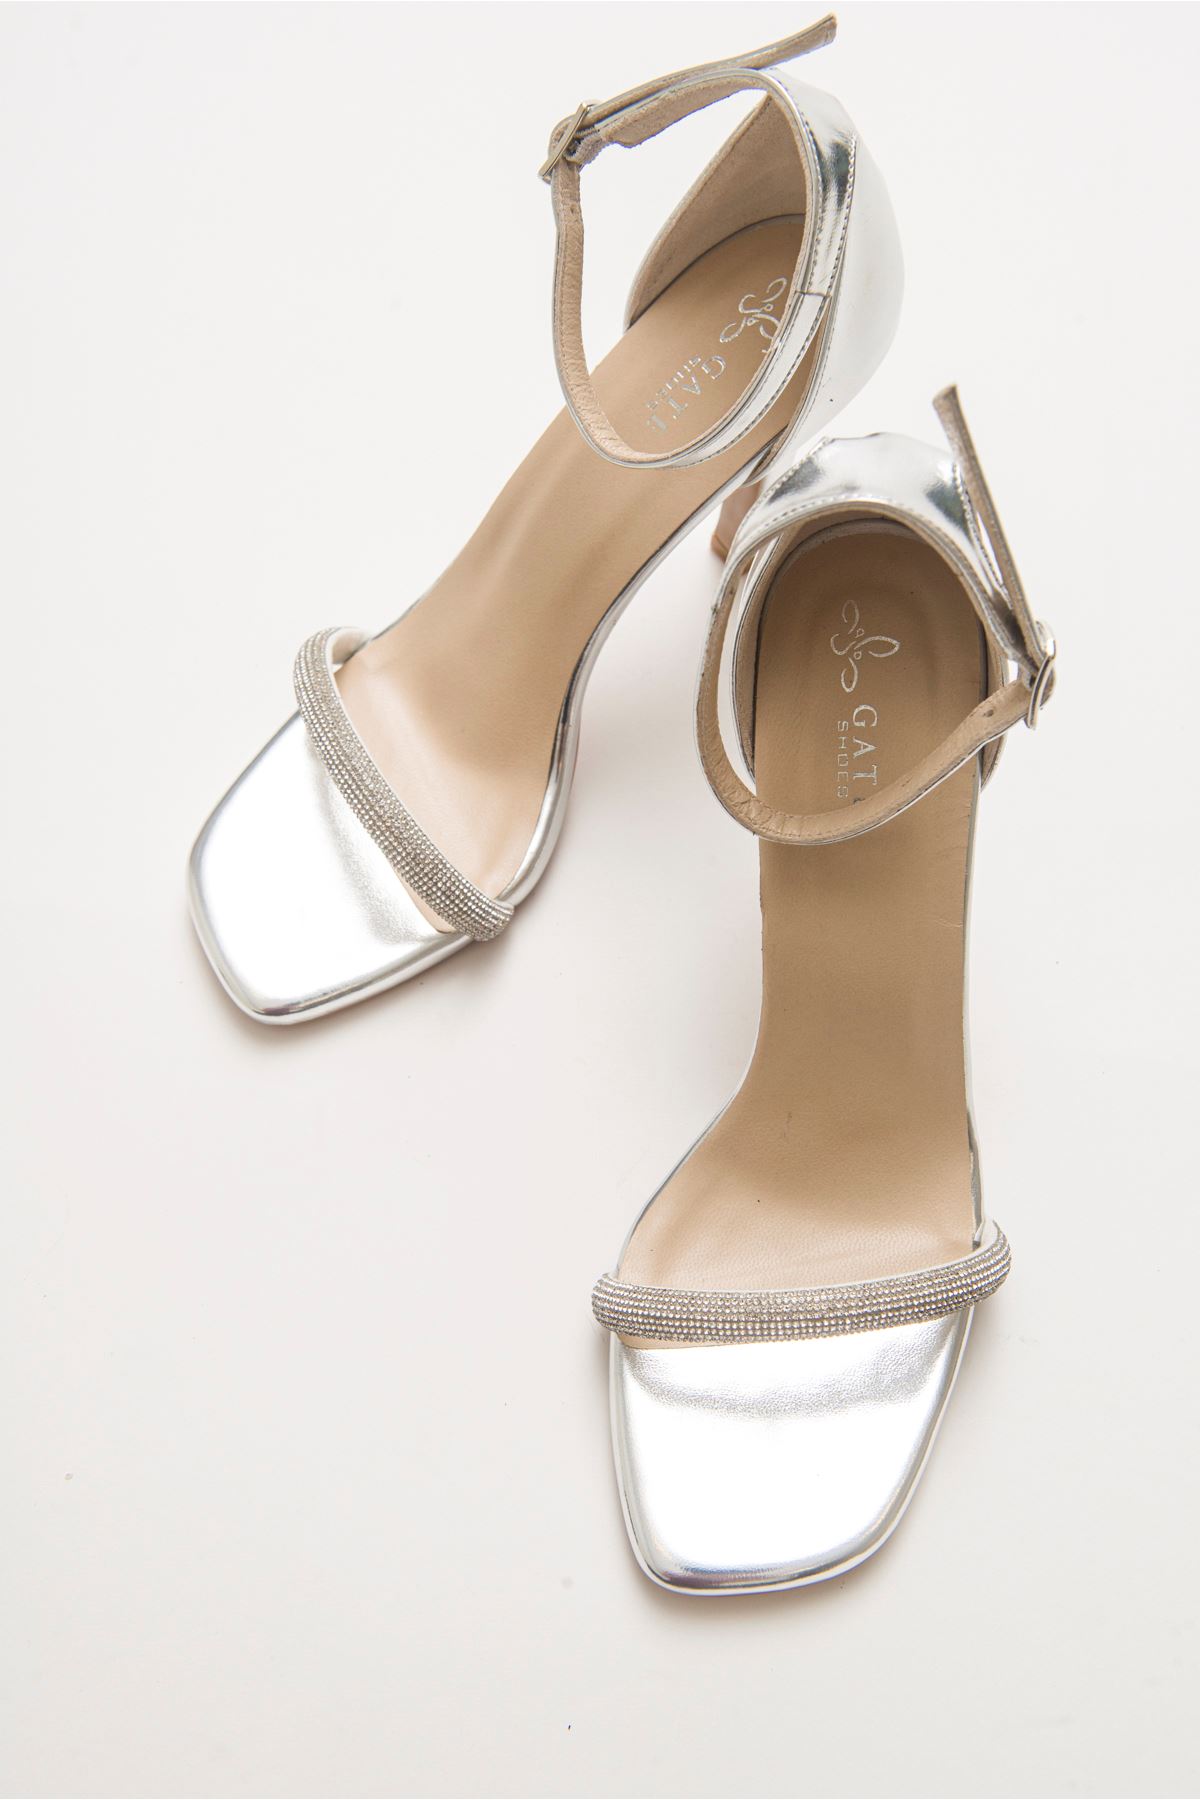 Cinzia Parlak Abiye Yüksek Topuk Taşlı Bilekten Bağlamalı Kadın Gece Ayakkabısı Gate Shoes-Gümüş